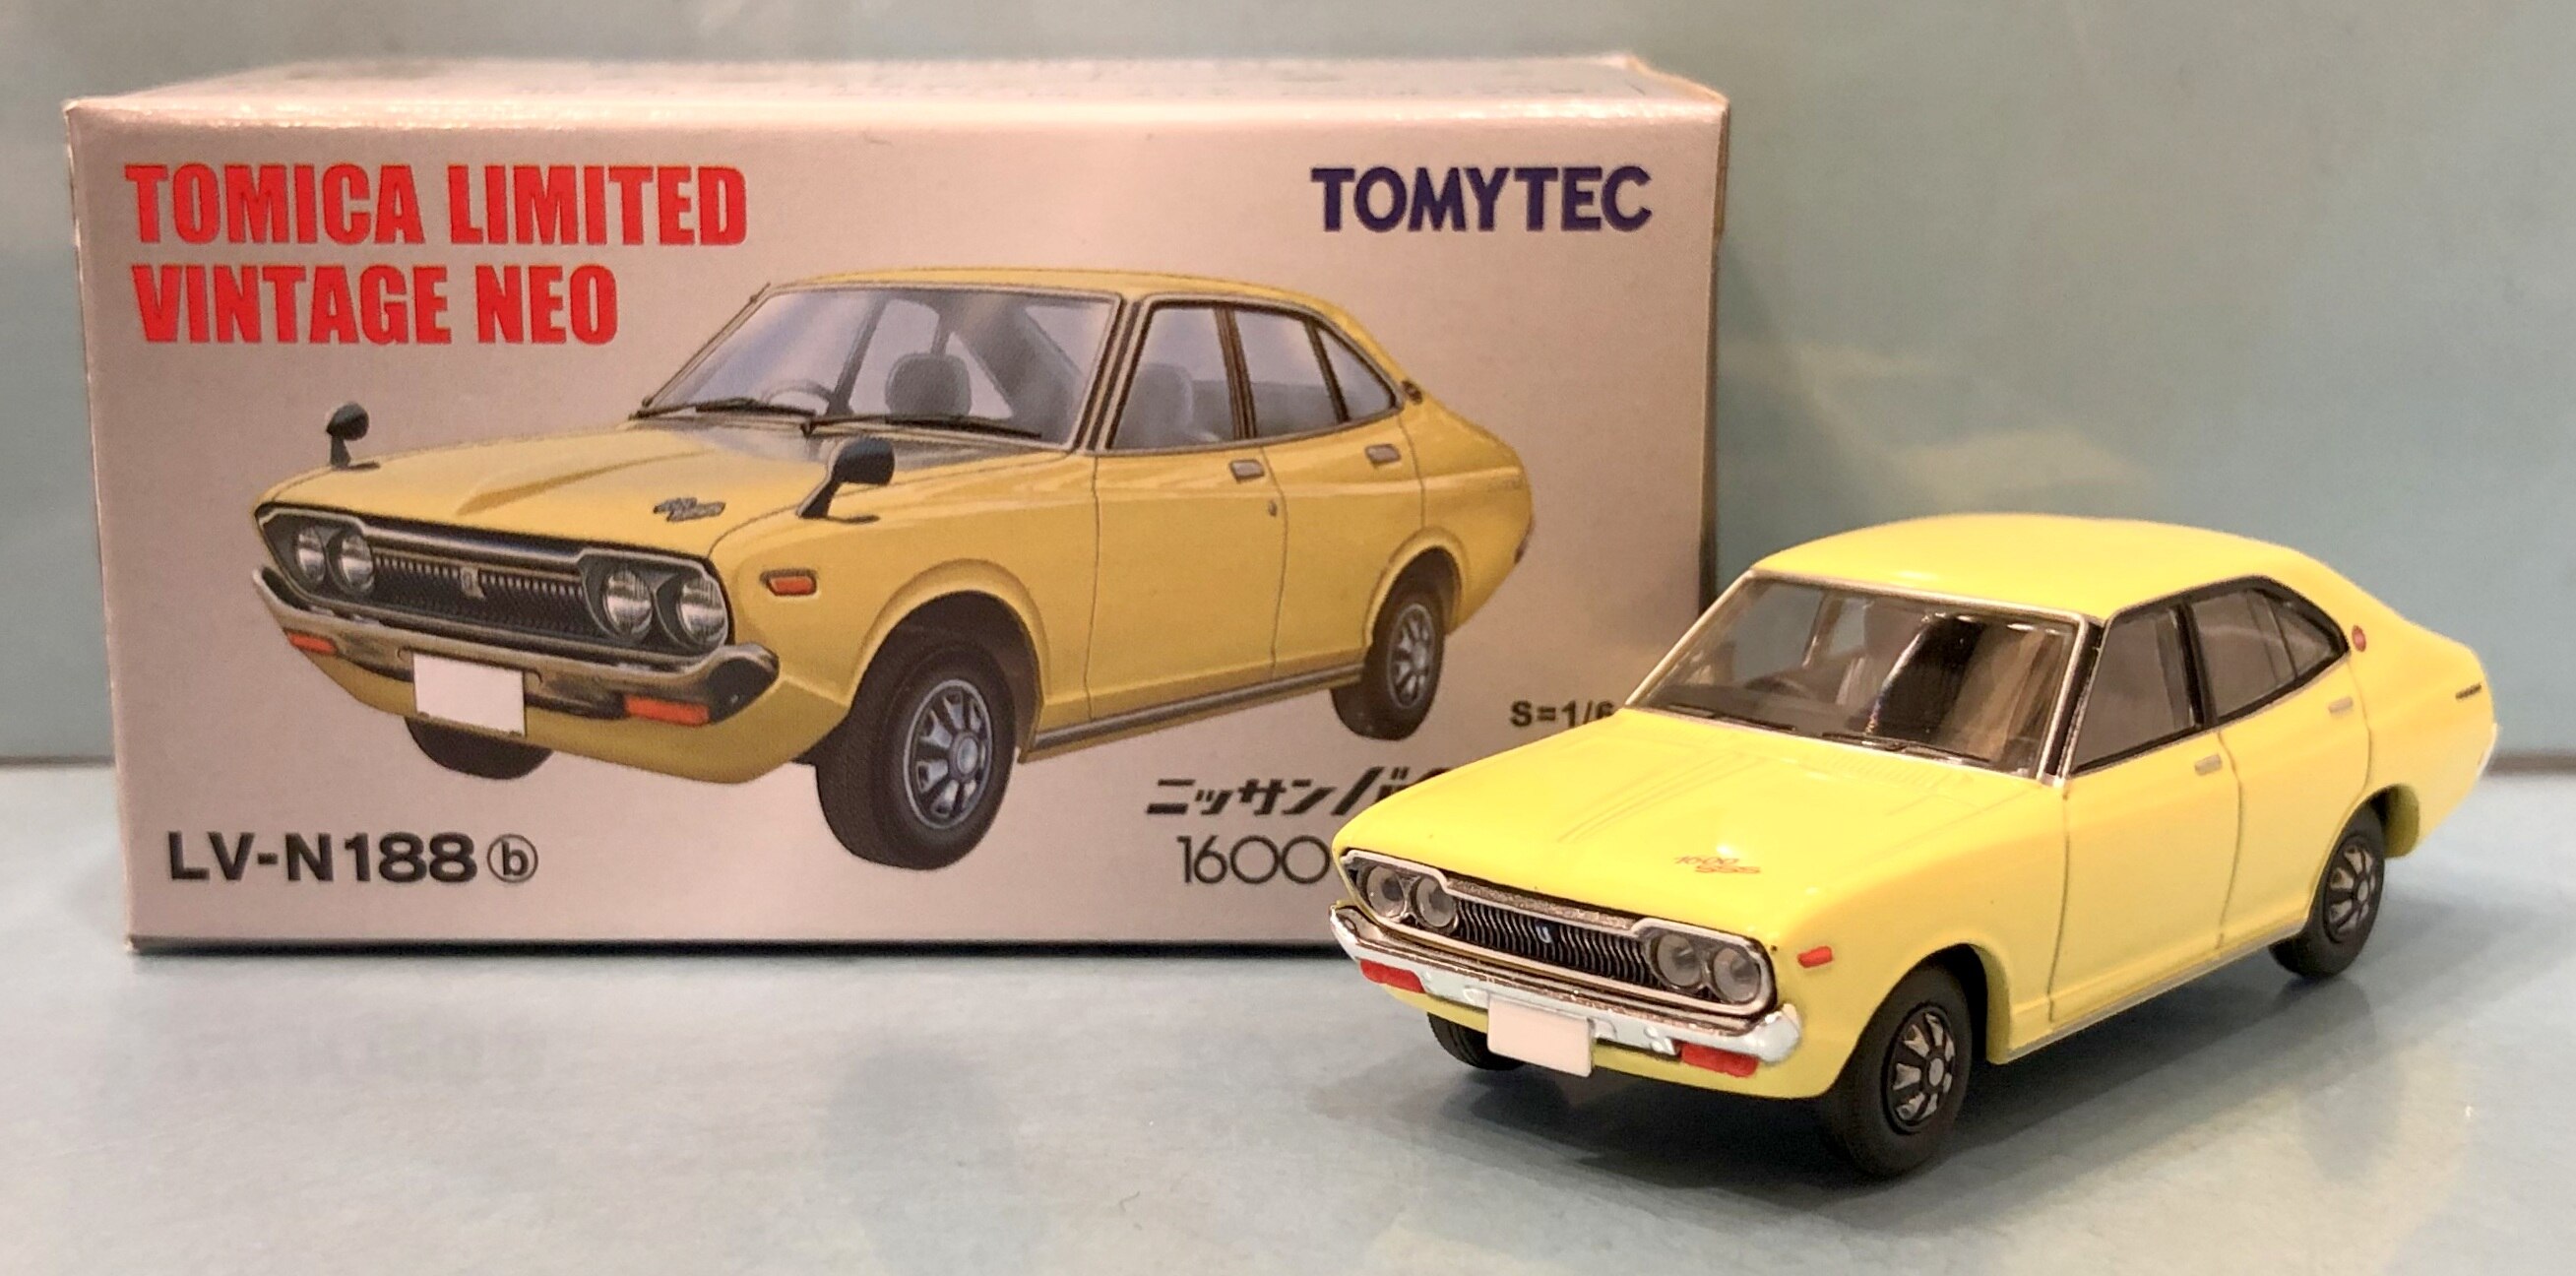 Tomytec Tomica Limited Vintage NEO Nissan Violet 1600SSS (73 year